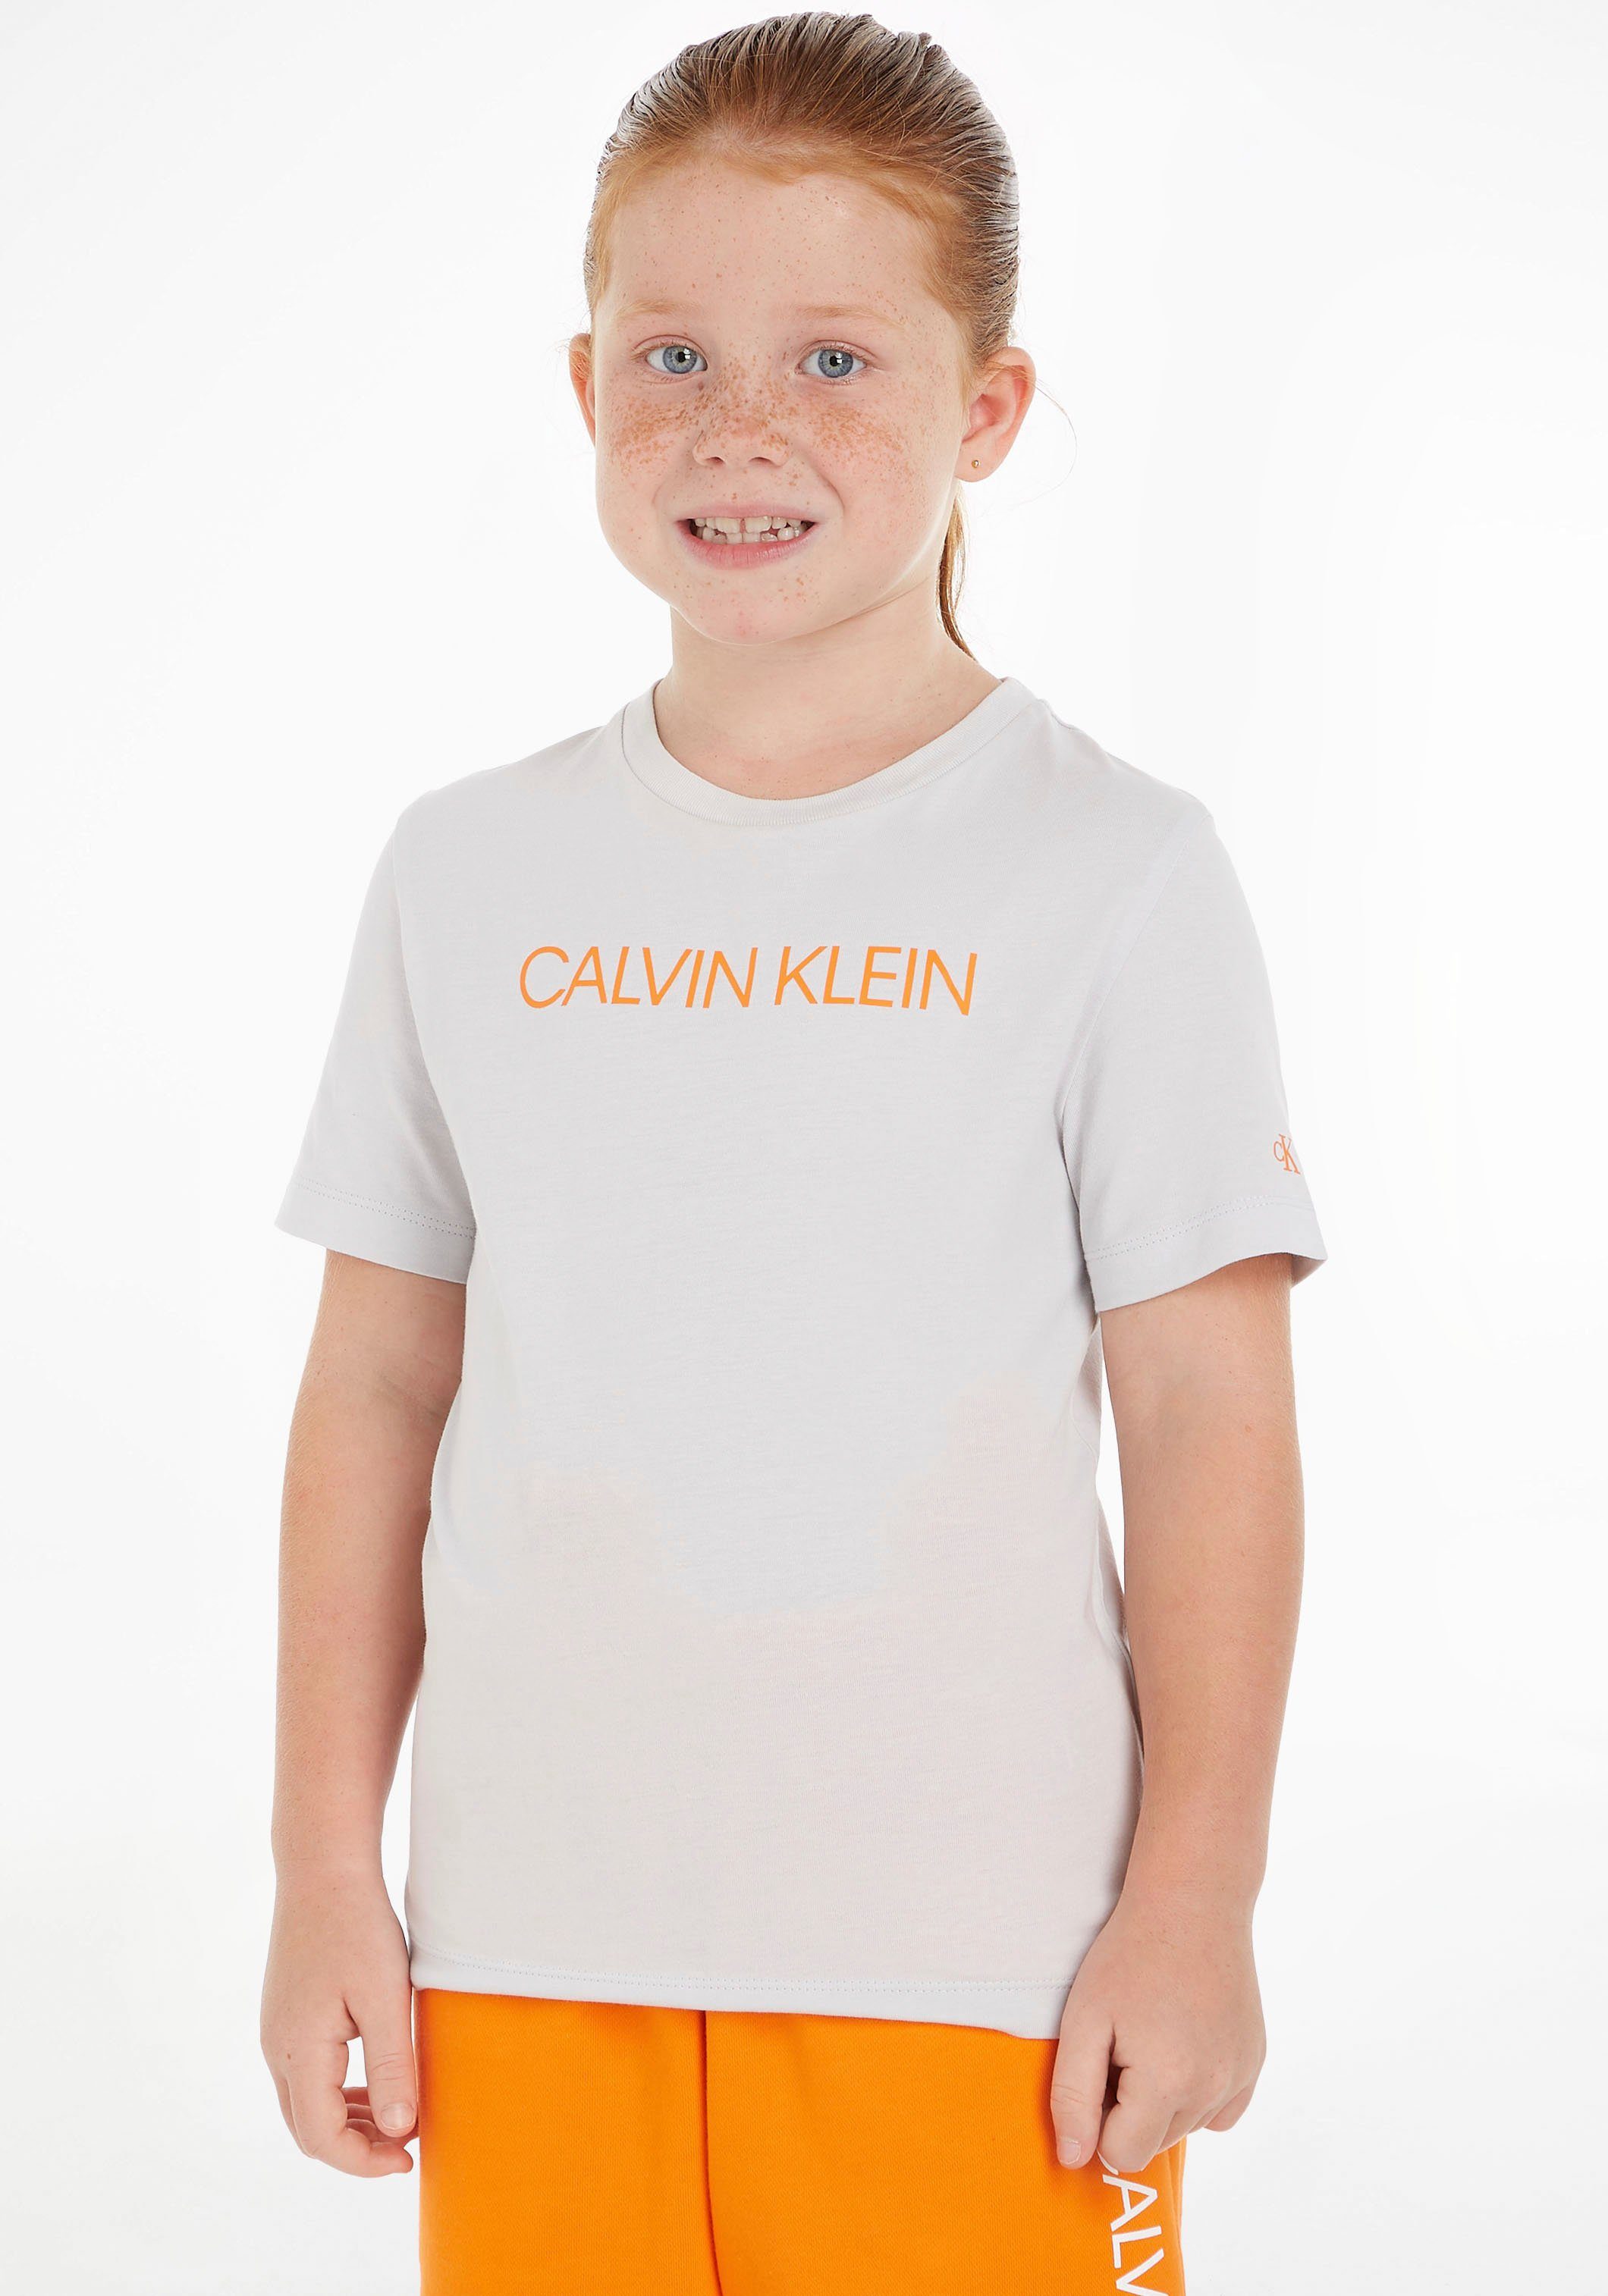 Calvin Klein Jeans T-Shirt Kinder Kids Junior MiniMe,mit Rundhalsausschnitt